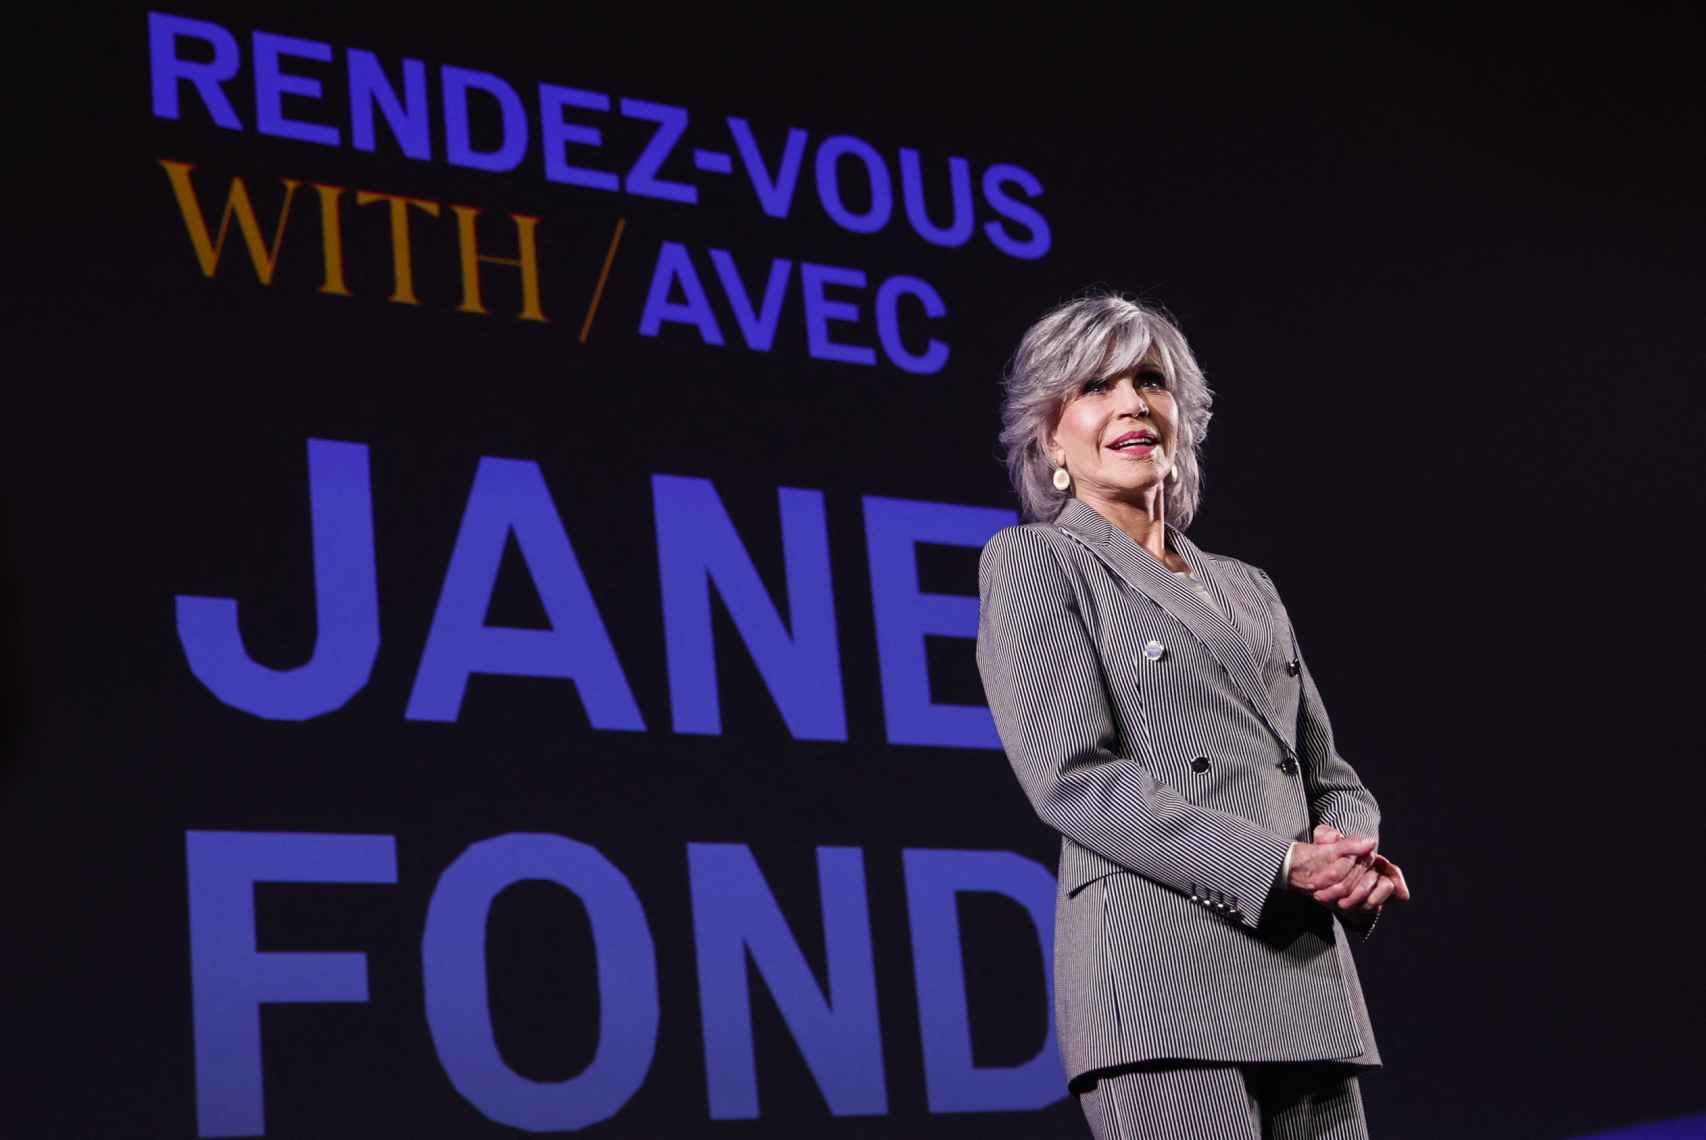 Otra imagen de Jane Fonda durante su intervención.